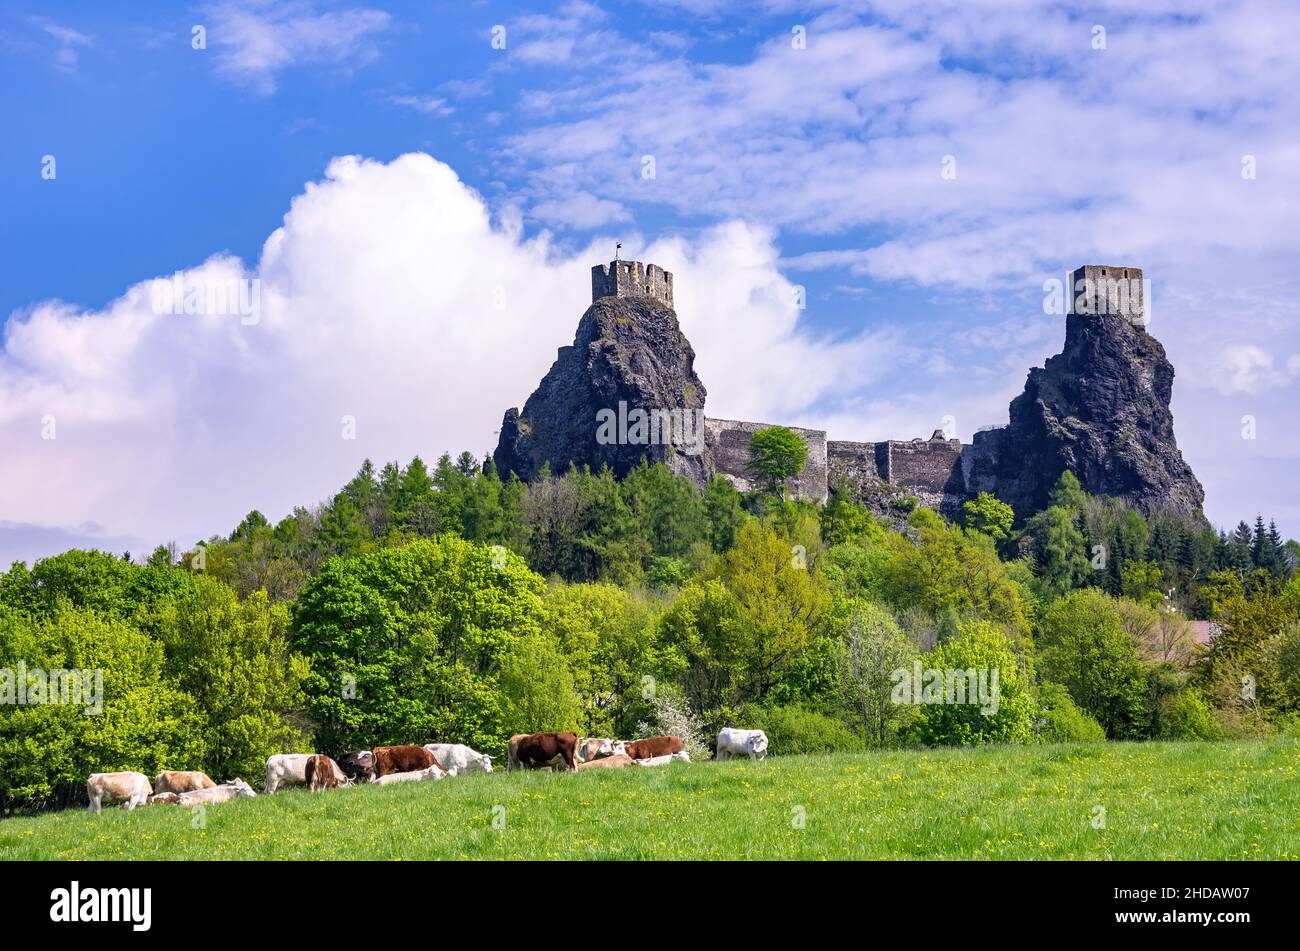 Vista del Castillo de Trosky en su pintoresco entorno rural en Rovensko pod Troskami, el Paraíso Bohemio (Cesky Raj), Kralovehradecky kraj, República Checa. Foto de stock